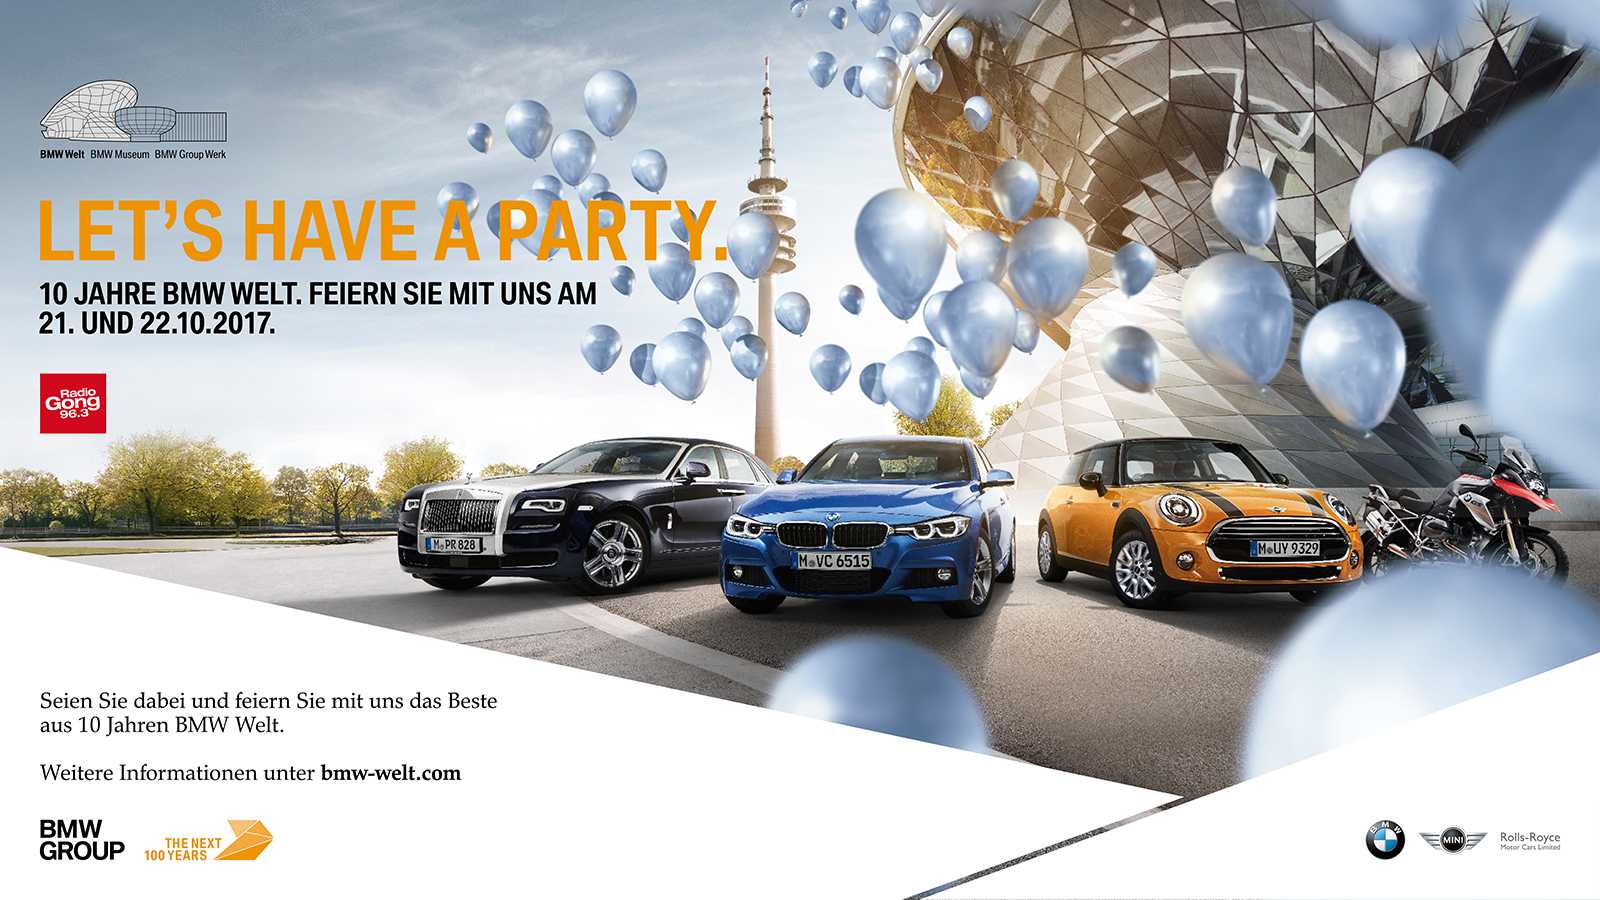 "10 Jahre BMW Welt". Jubiläumswochenende am 21. und 22. Oktober 2017 in der BMW Welt in München. (10/2017)